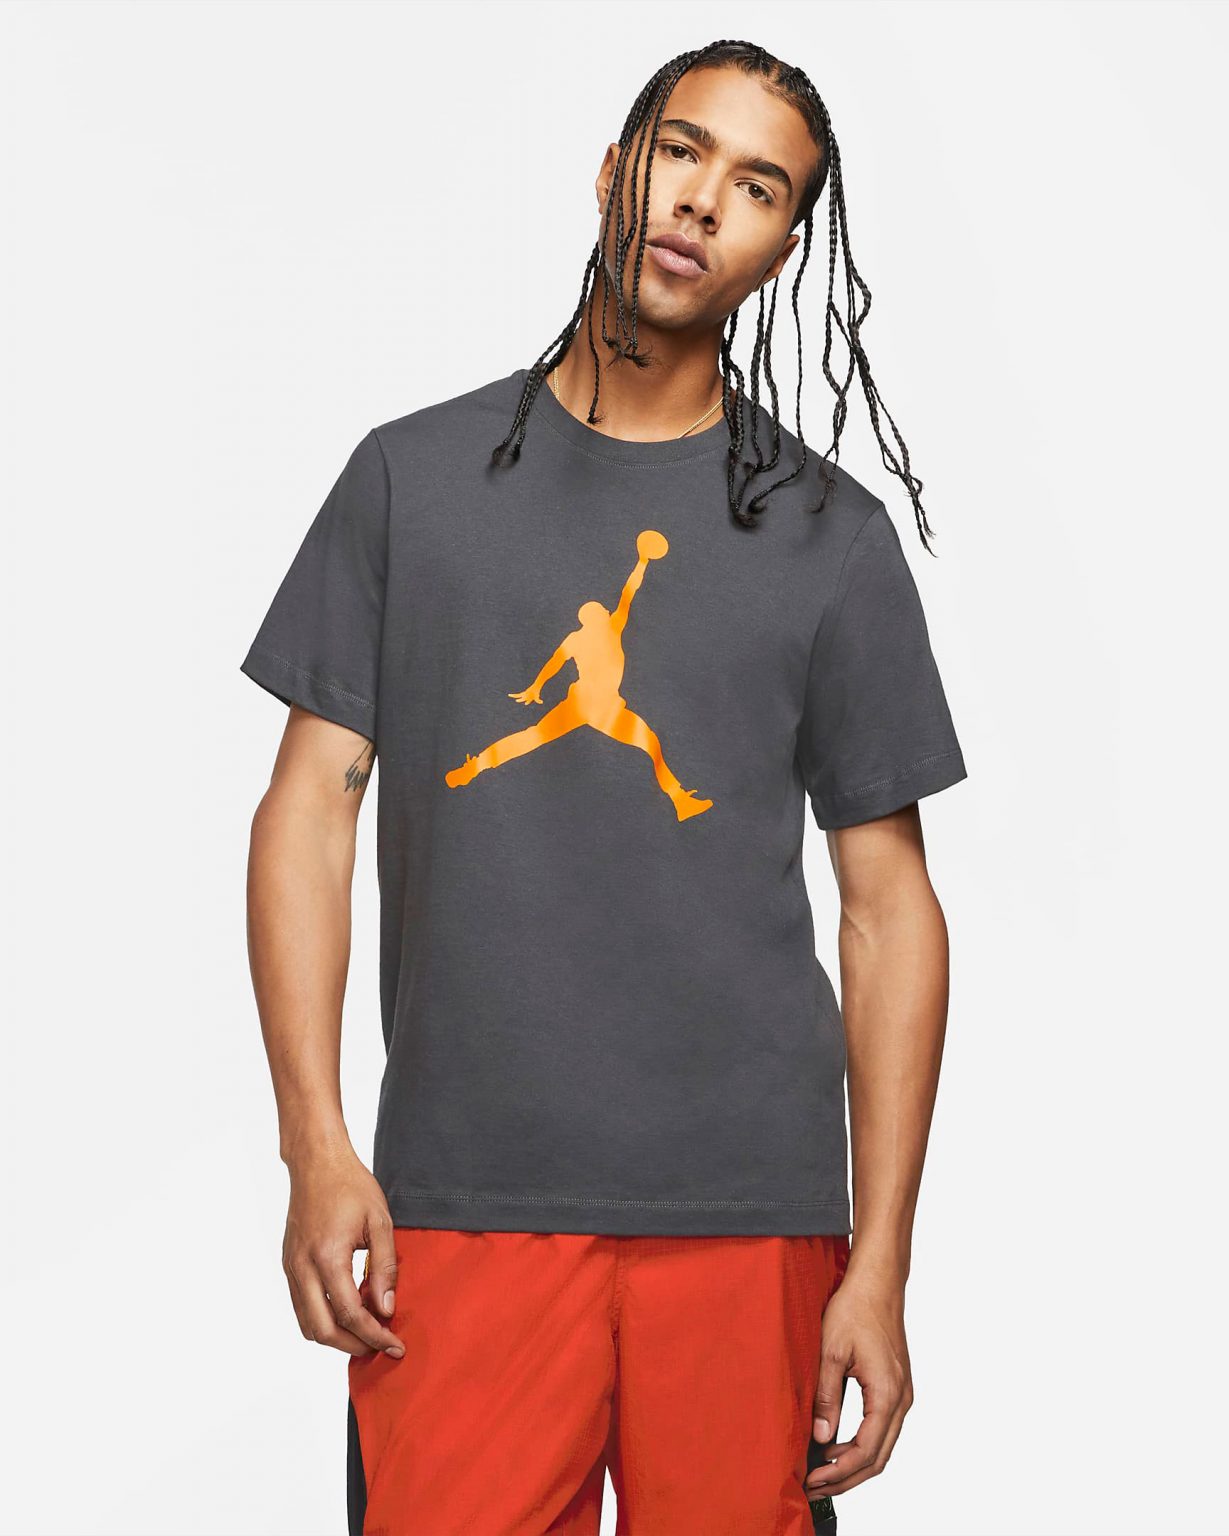 Sneaker Match: Air Jordan 9 “University Gold” + Jordan Jumpman T-Shirt ...